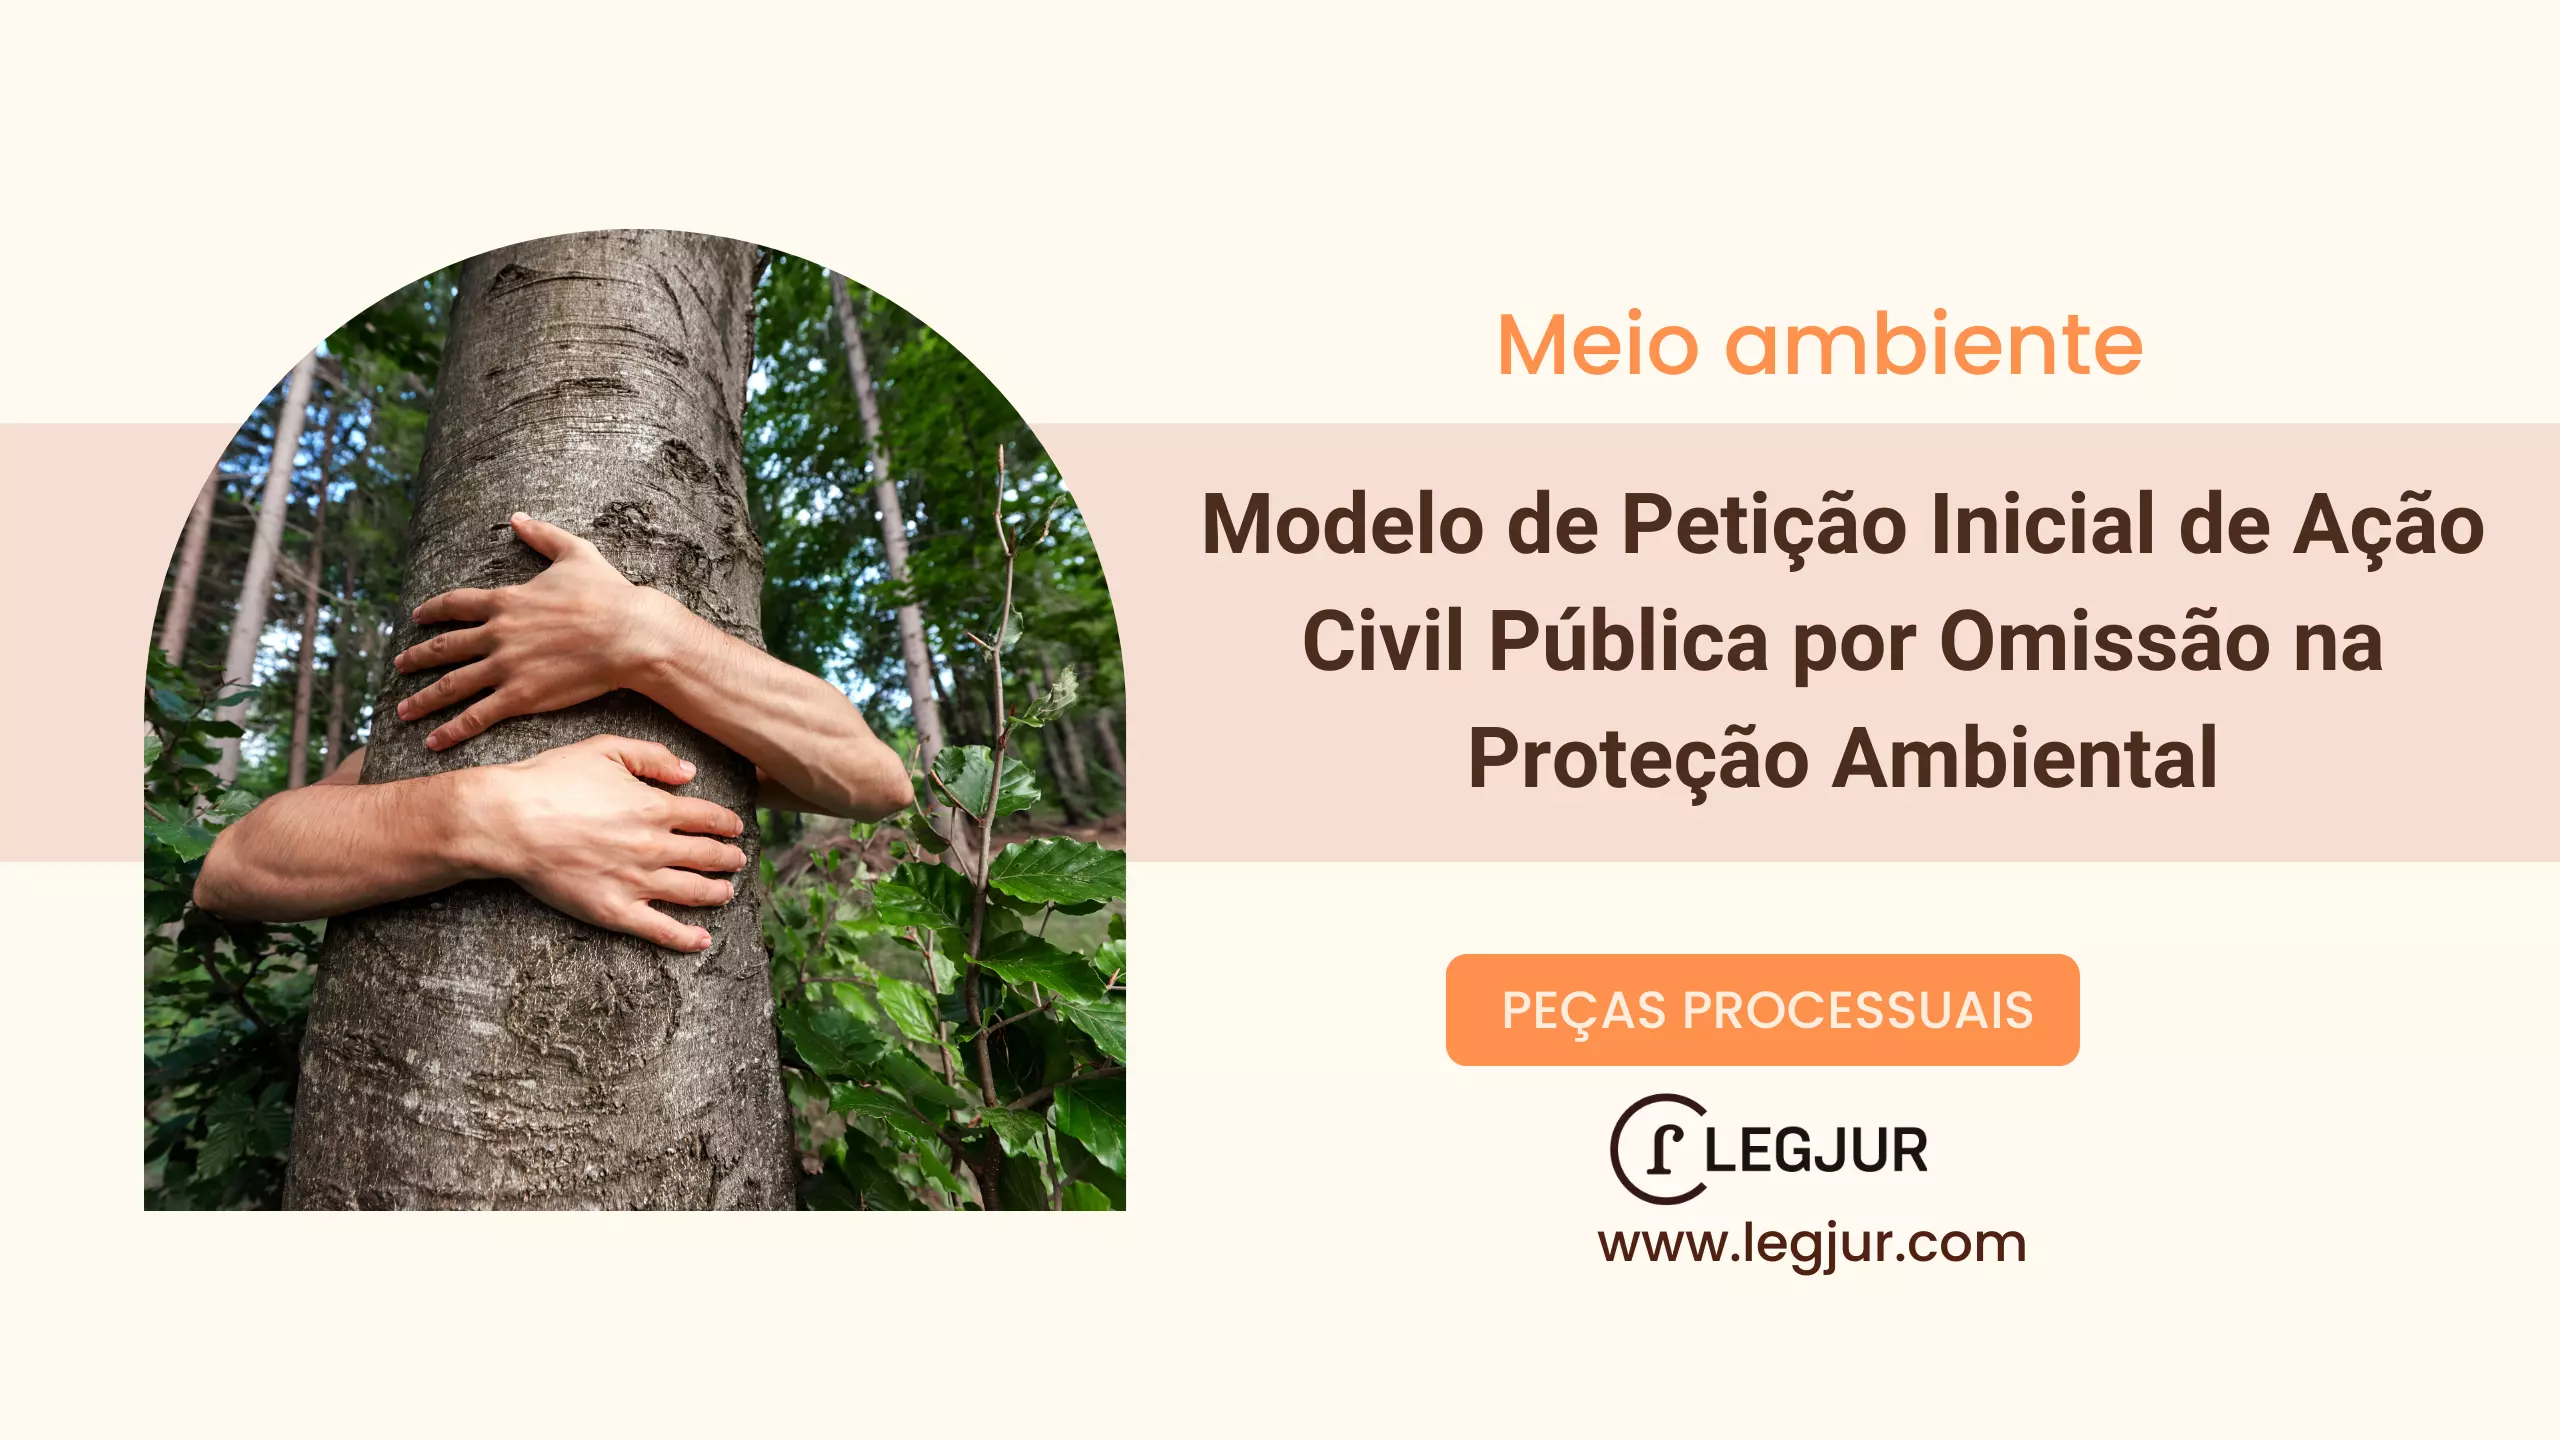 Modelo de Petição Inicial de Ação Civil Pública por Omissão na Proteção Ambiental